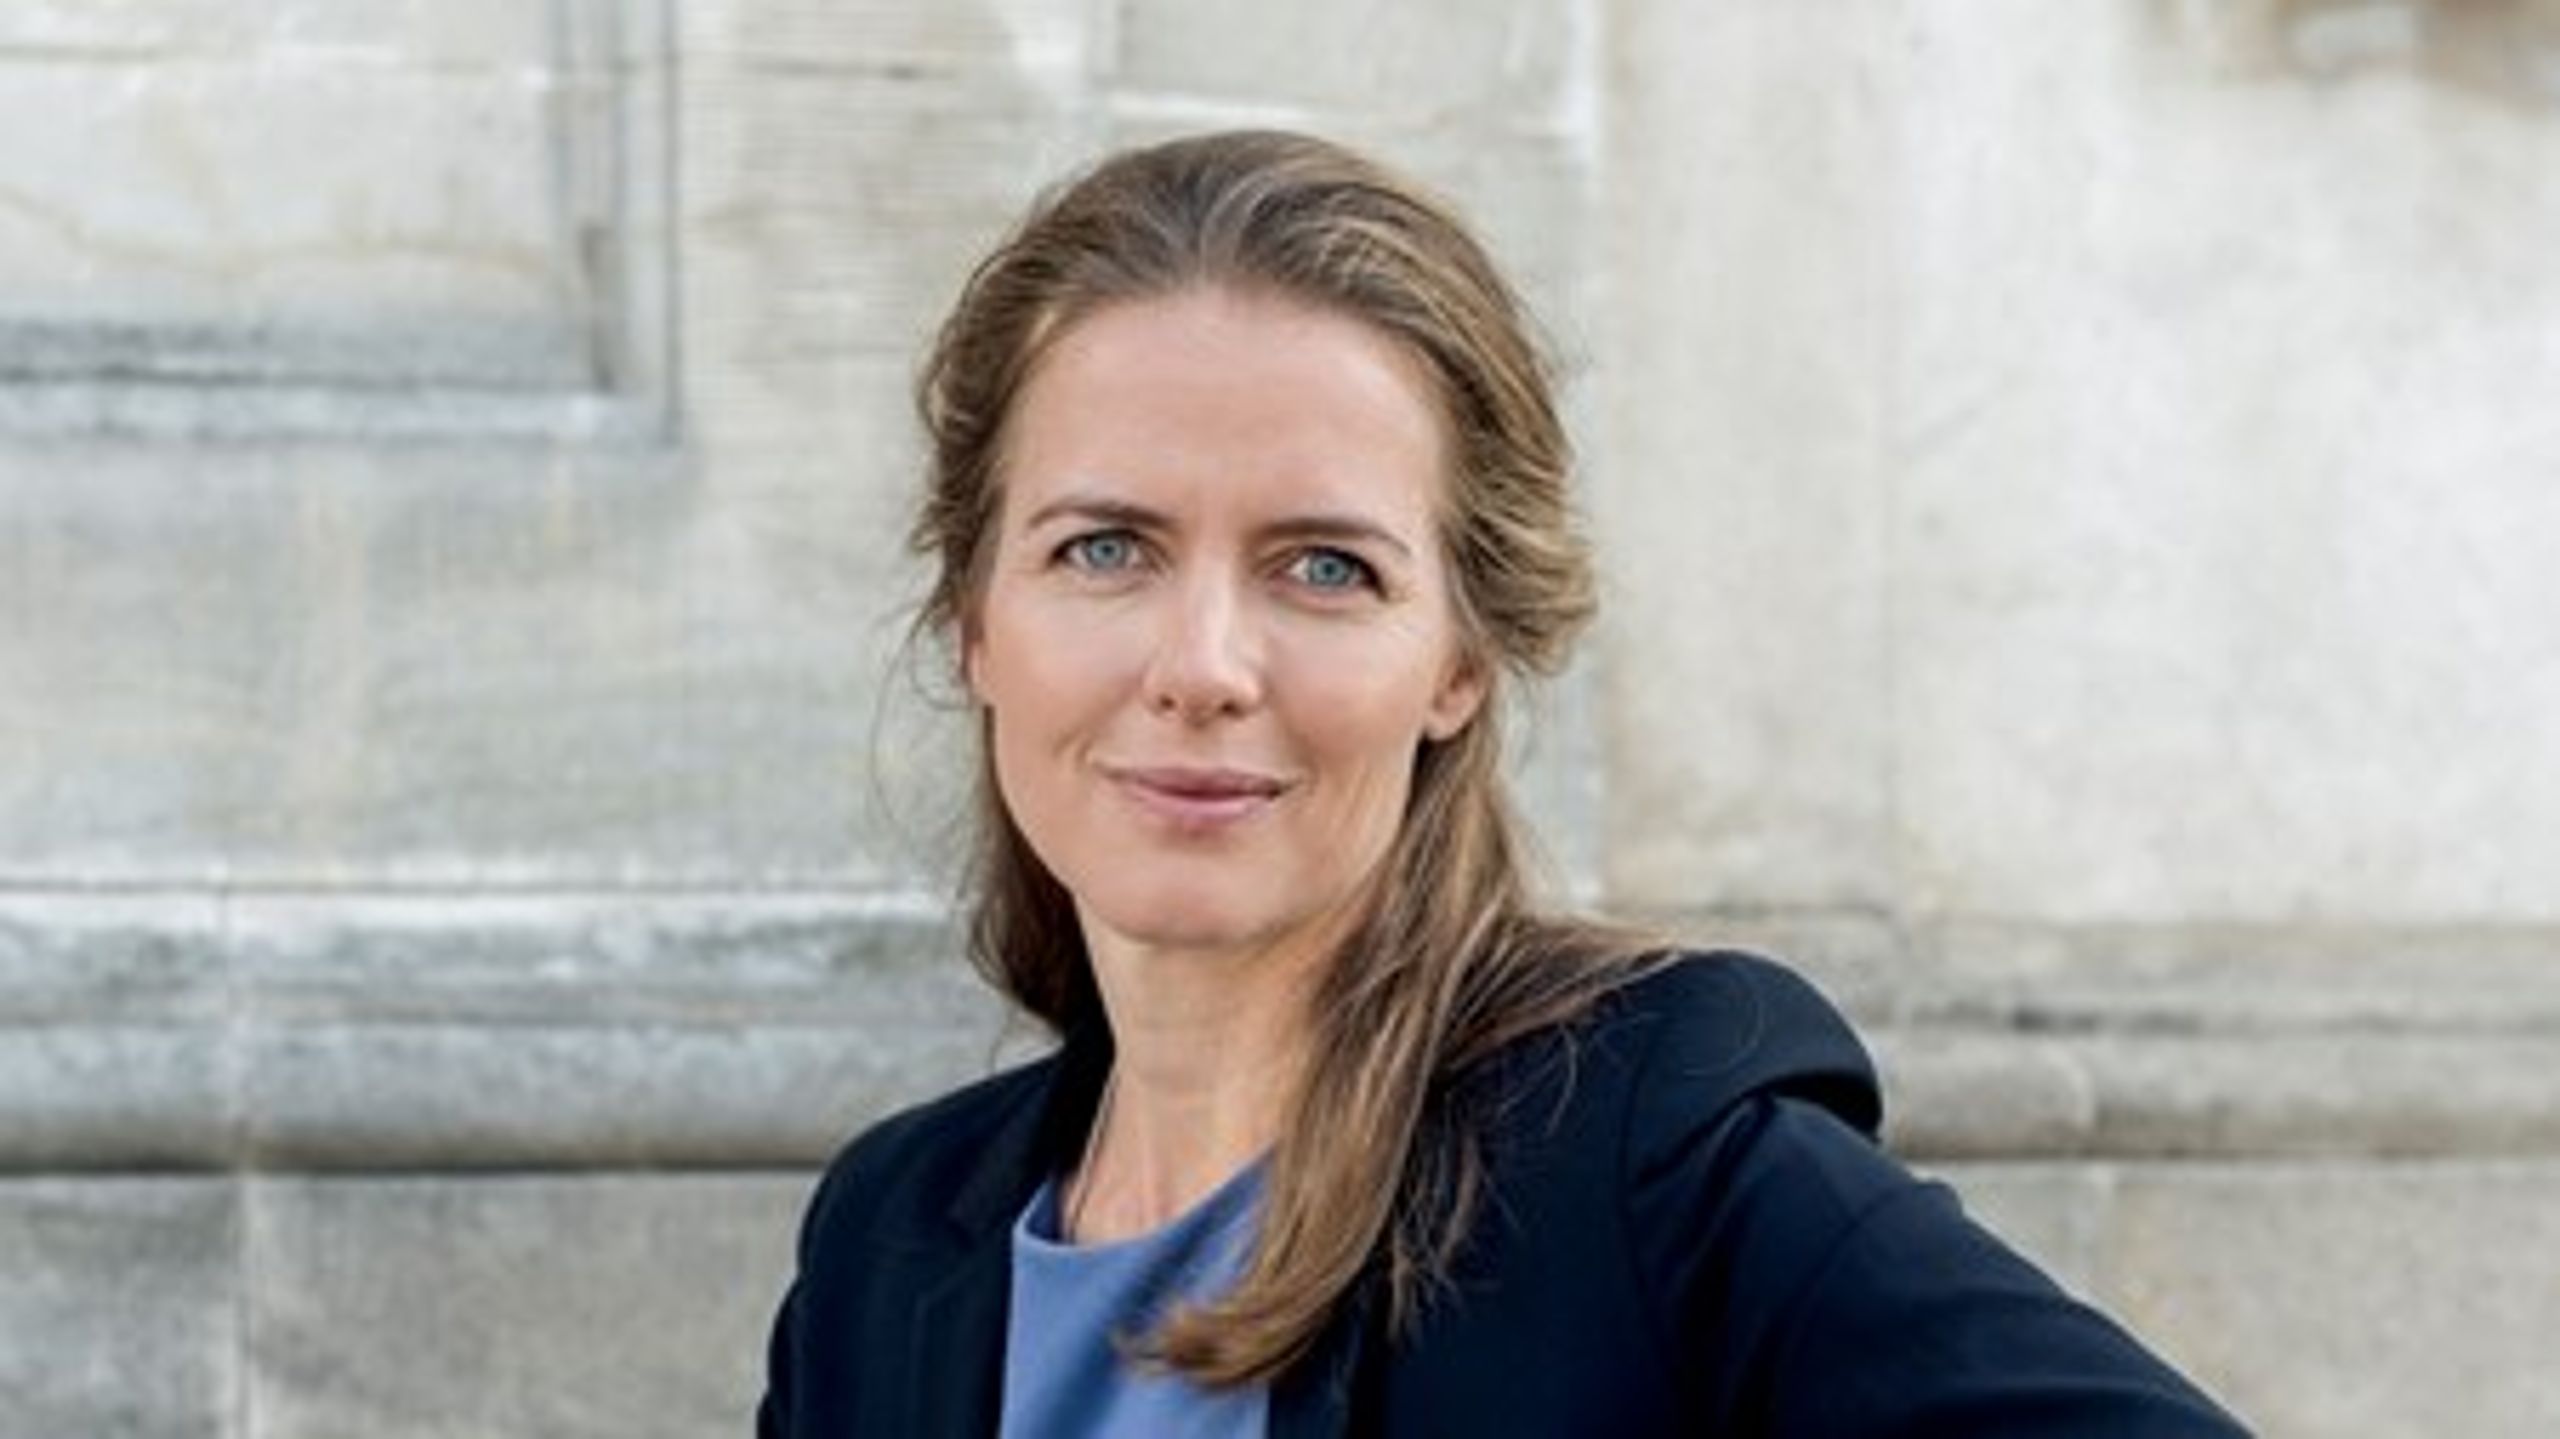 Ellen Trane Nørby er træt af den elitære ligestillingsdebat og&nbsp;vil hellere snakke om de reelle udfordringer.